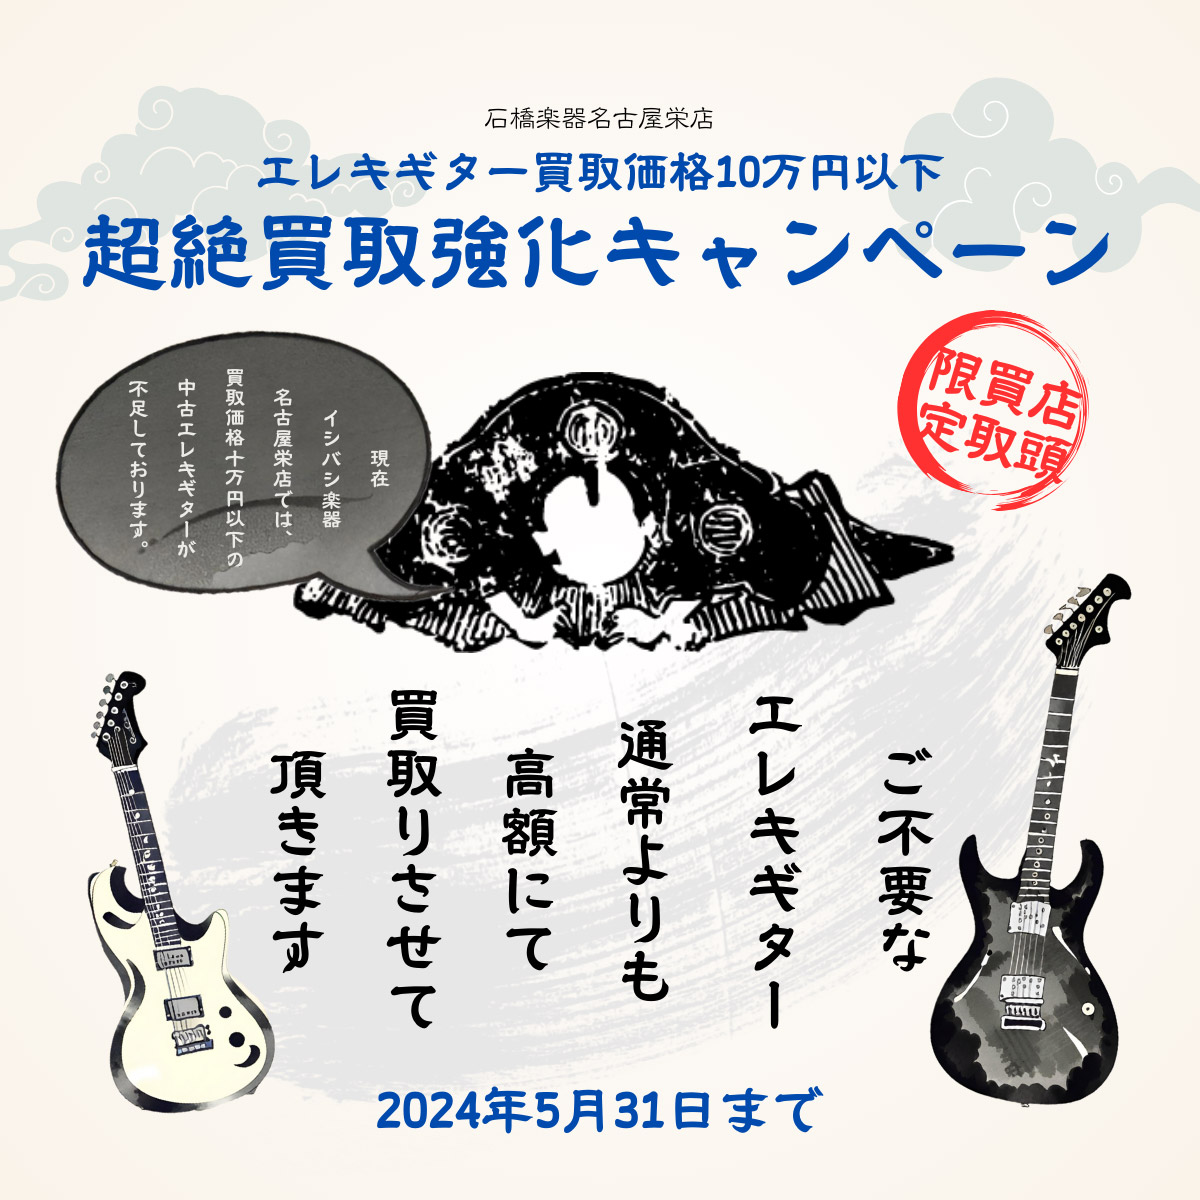 エレキギター 買取価格10万円以下 超絶買取強化